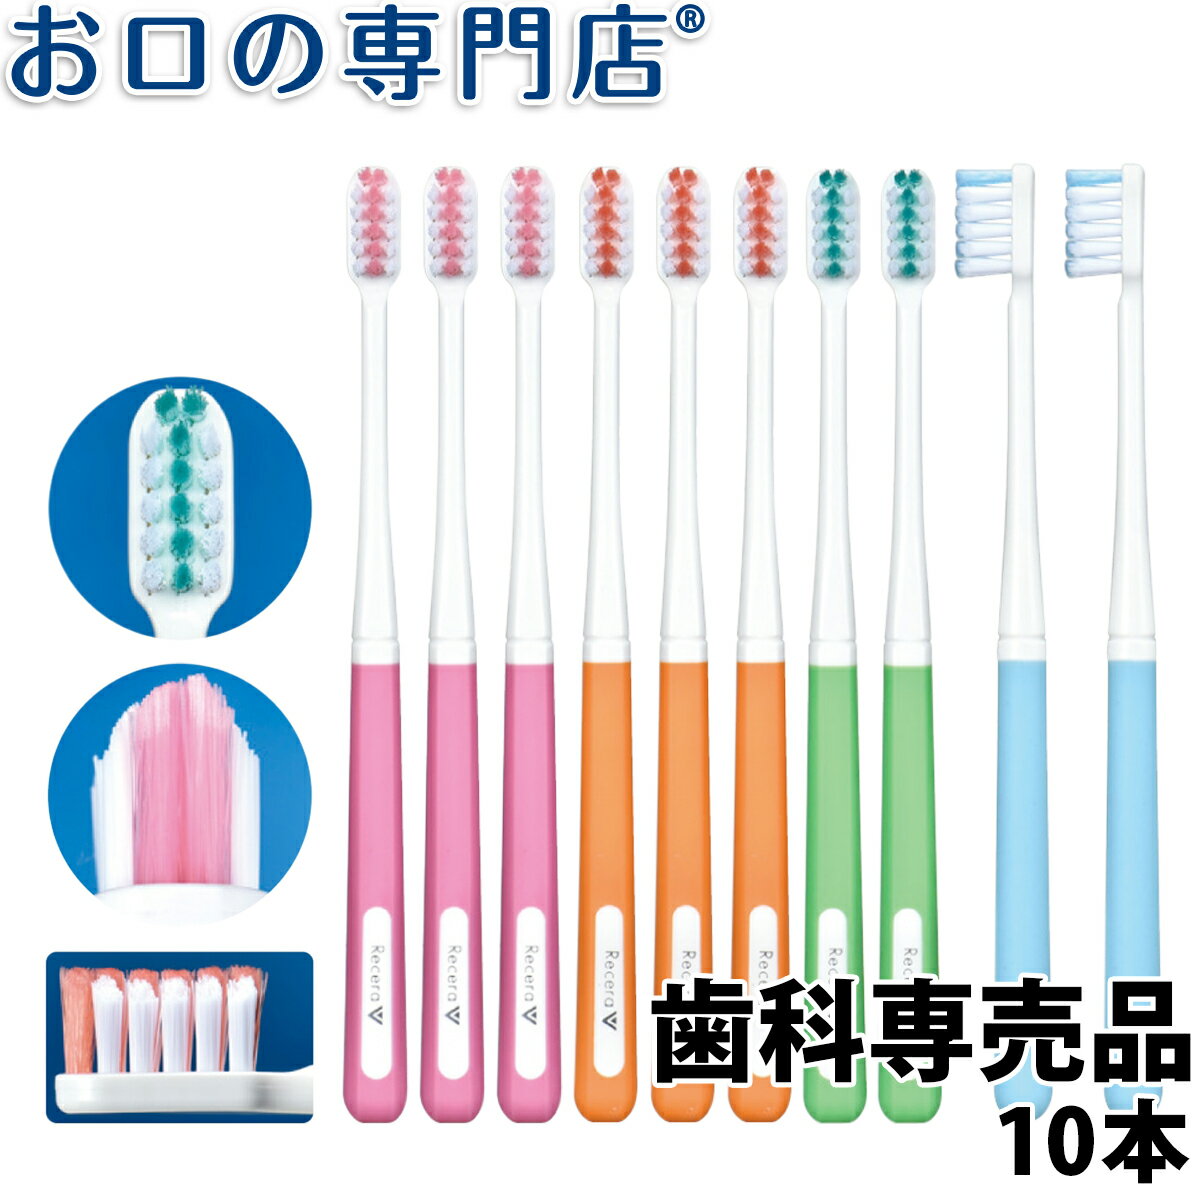 【送料無料】歯科専売品 矯正用歯ブラシ リセラV ふつう 10本